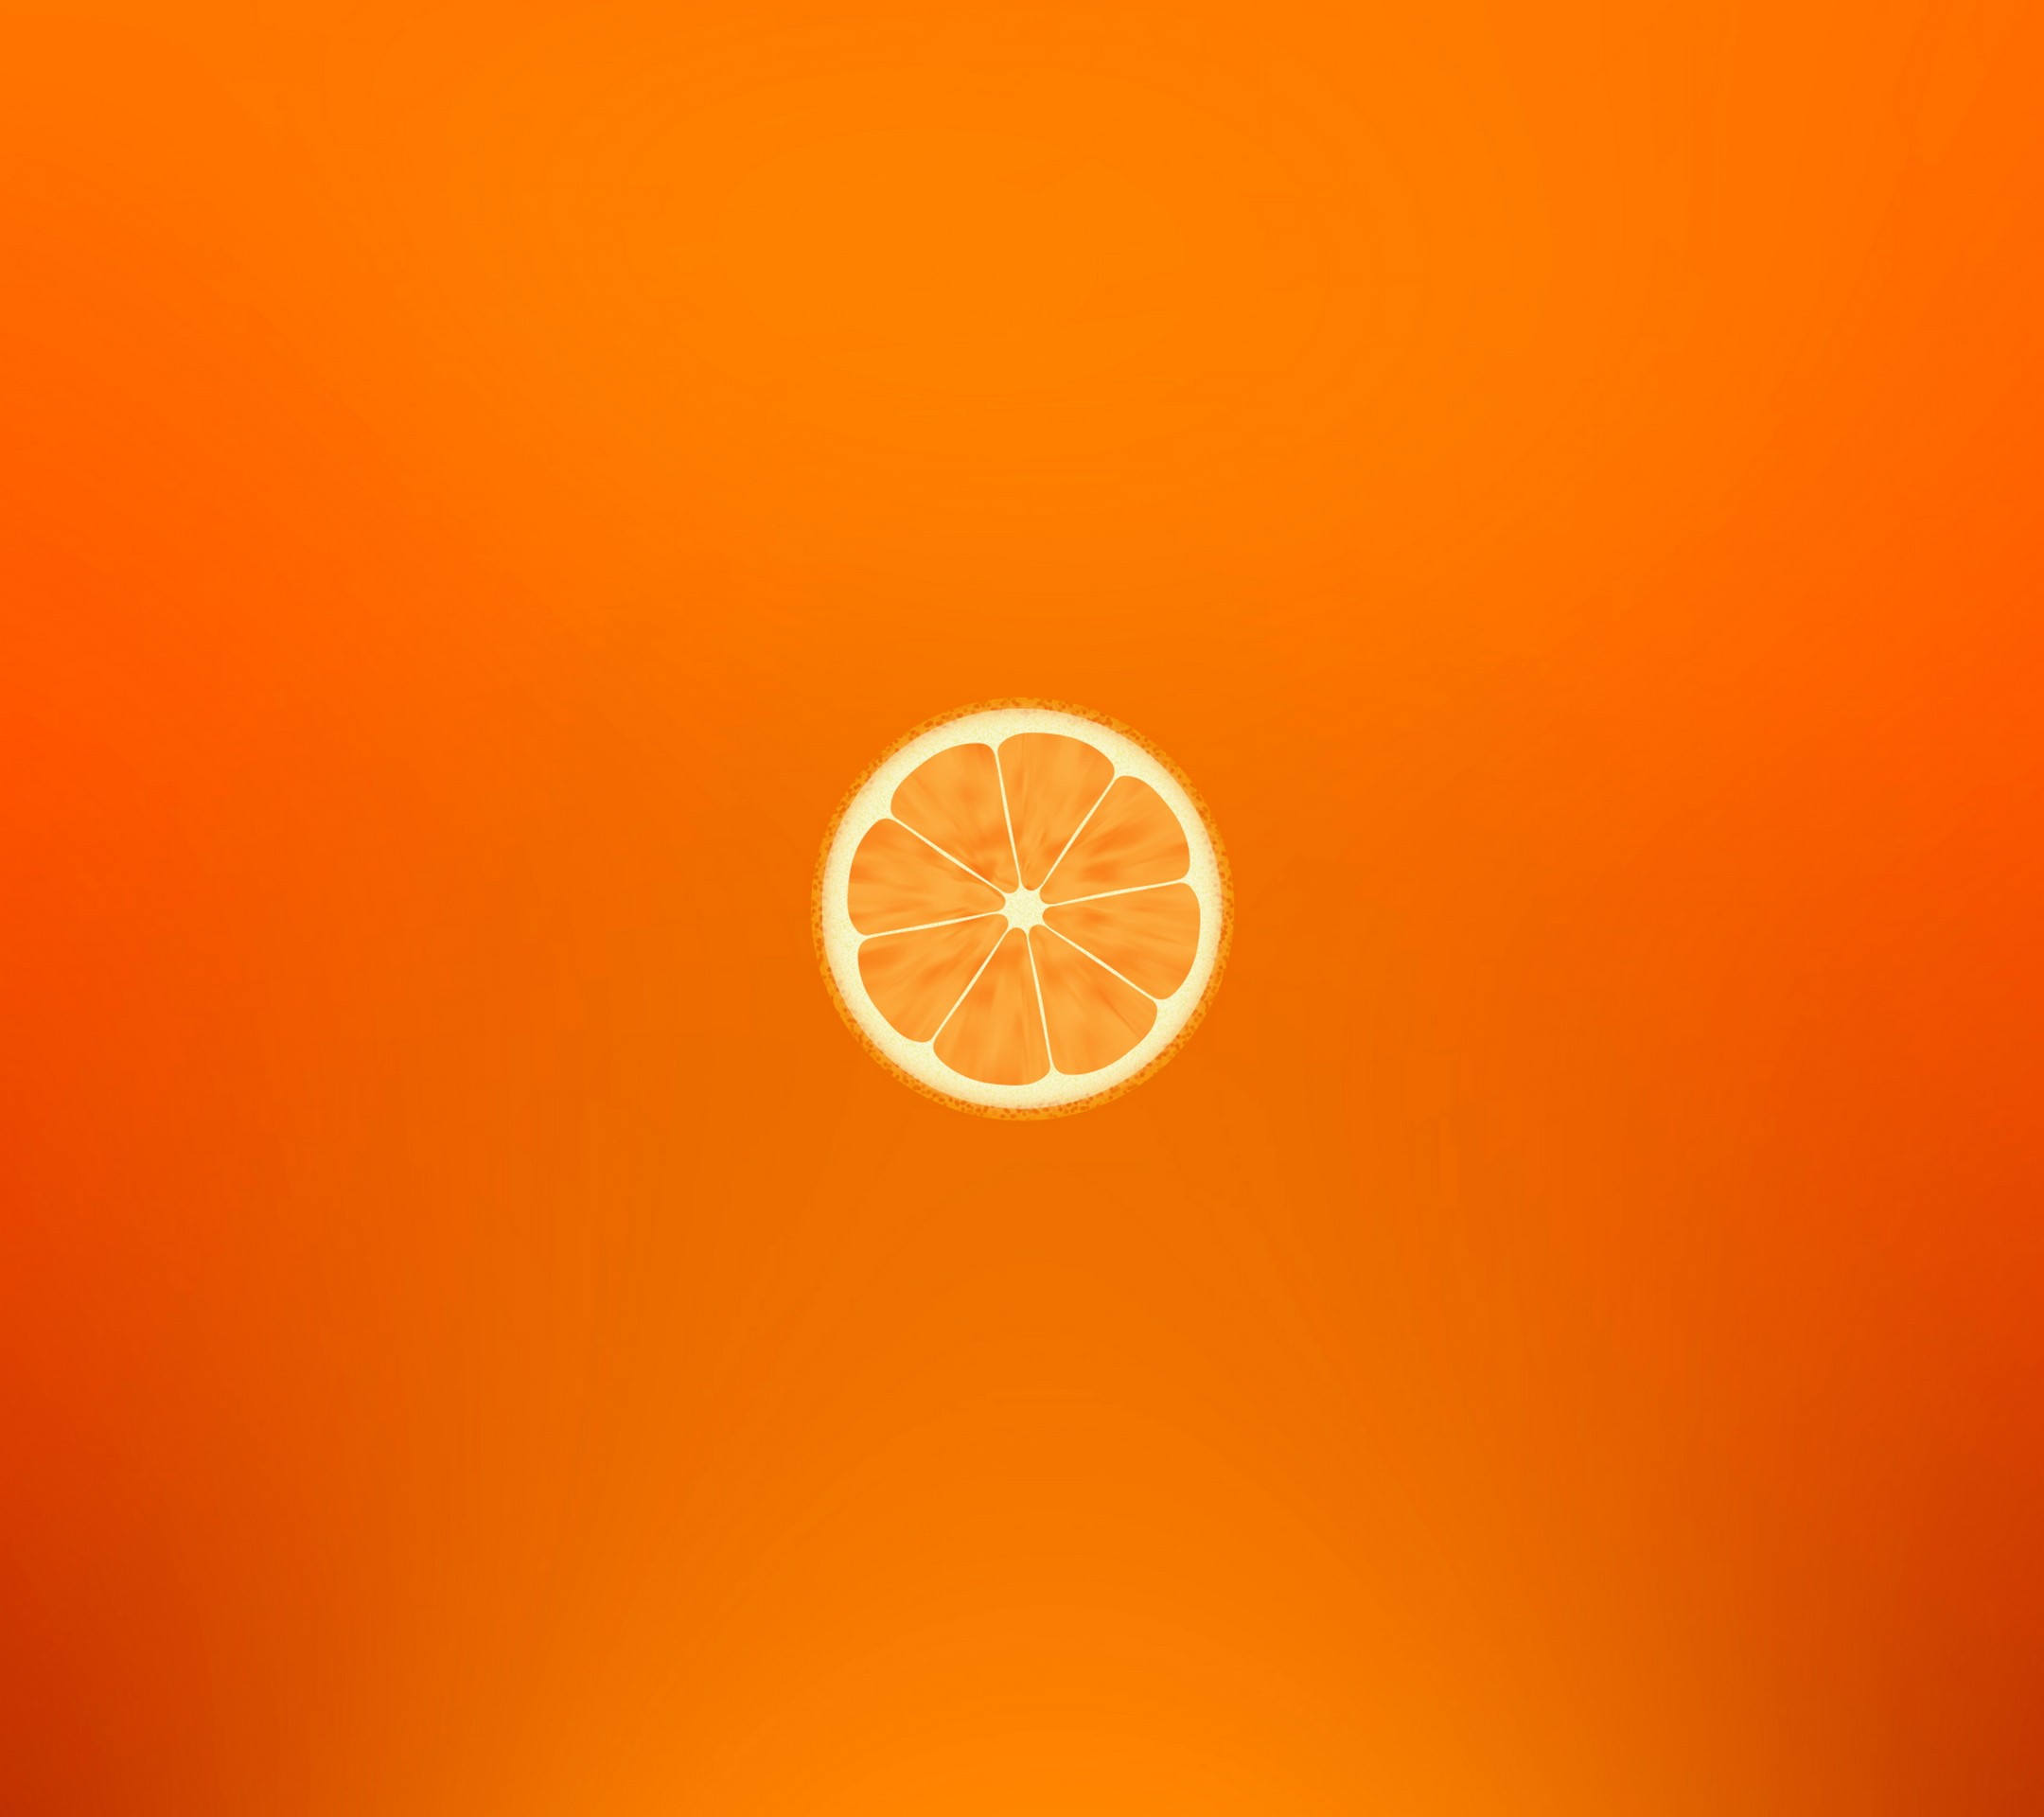 General 2160x1920 orange minimalism orange (fruit) food fruit orange background simple background